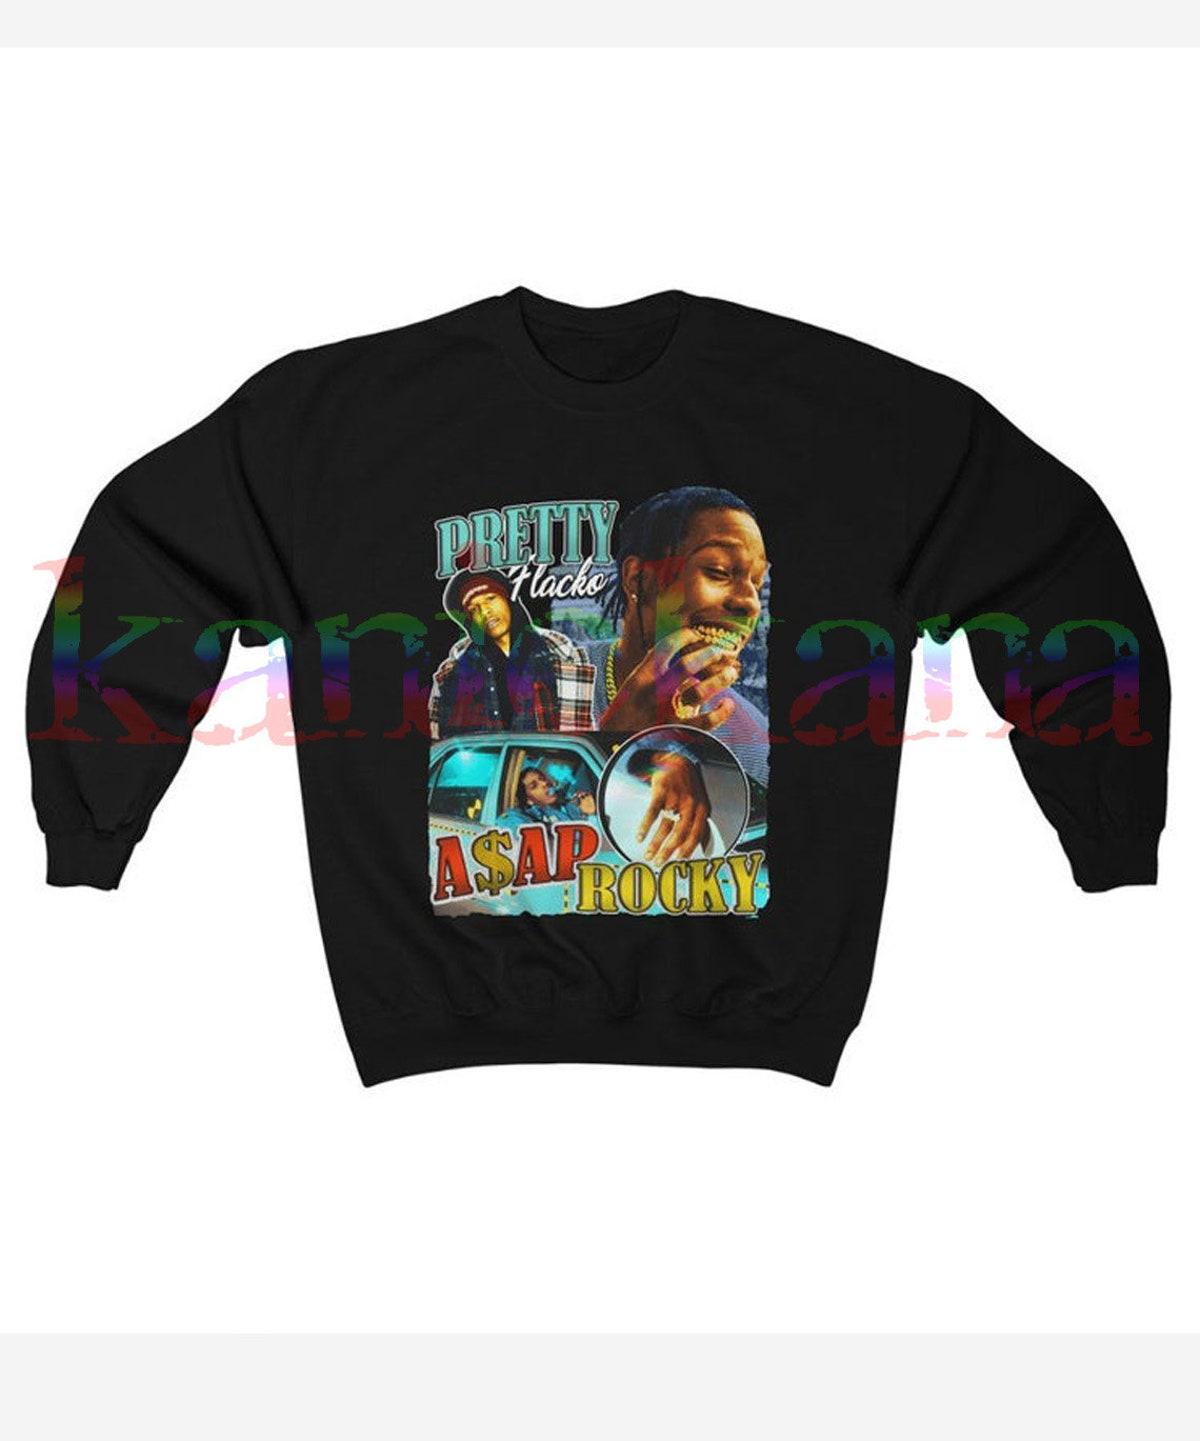 Sade Adu 90s Vintage T-shirt Gifts For Fans